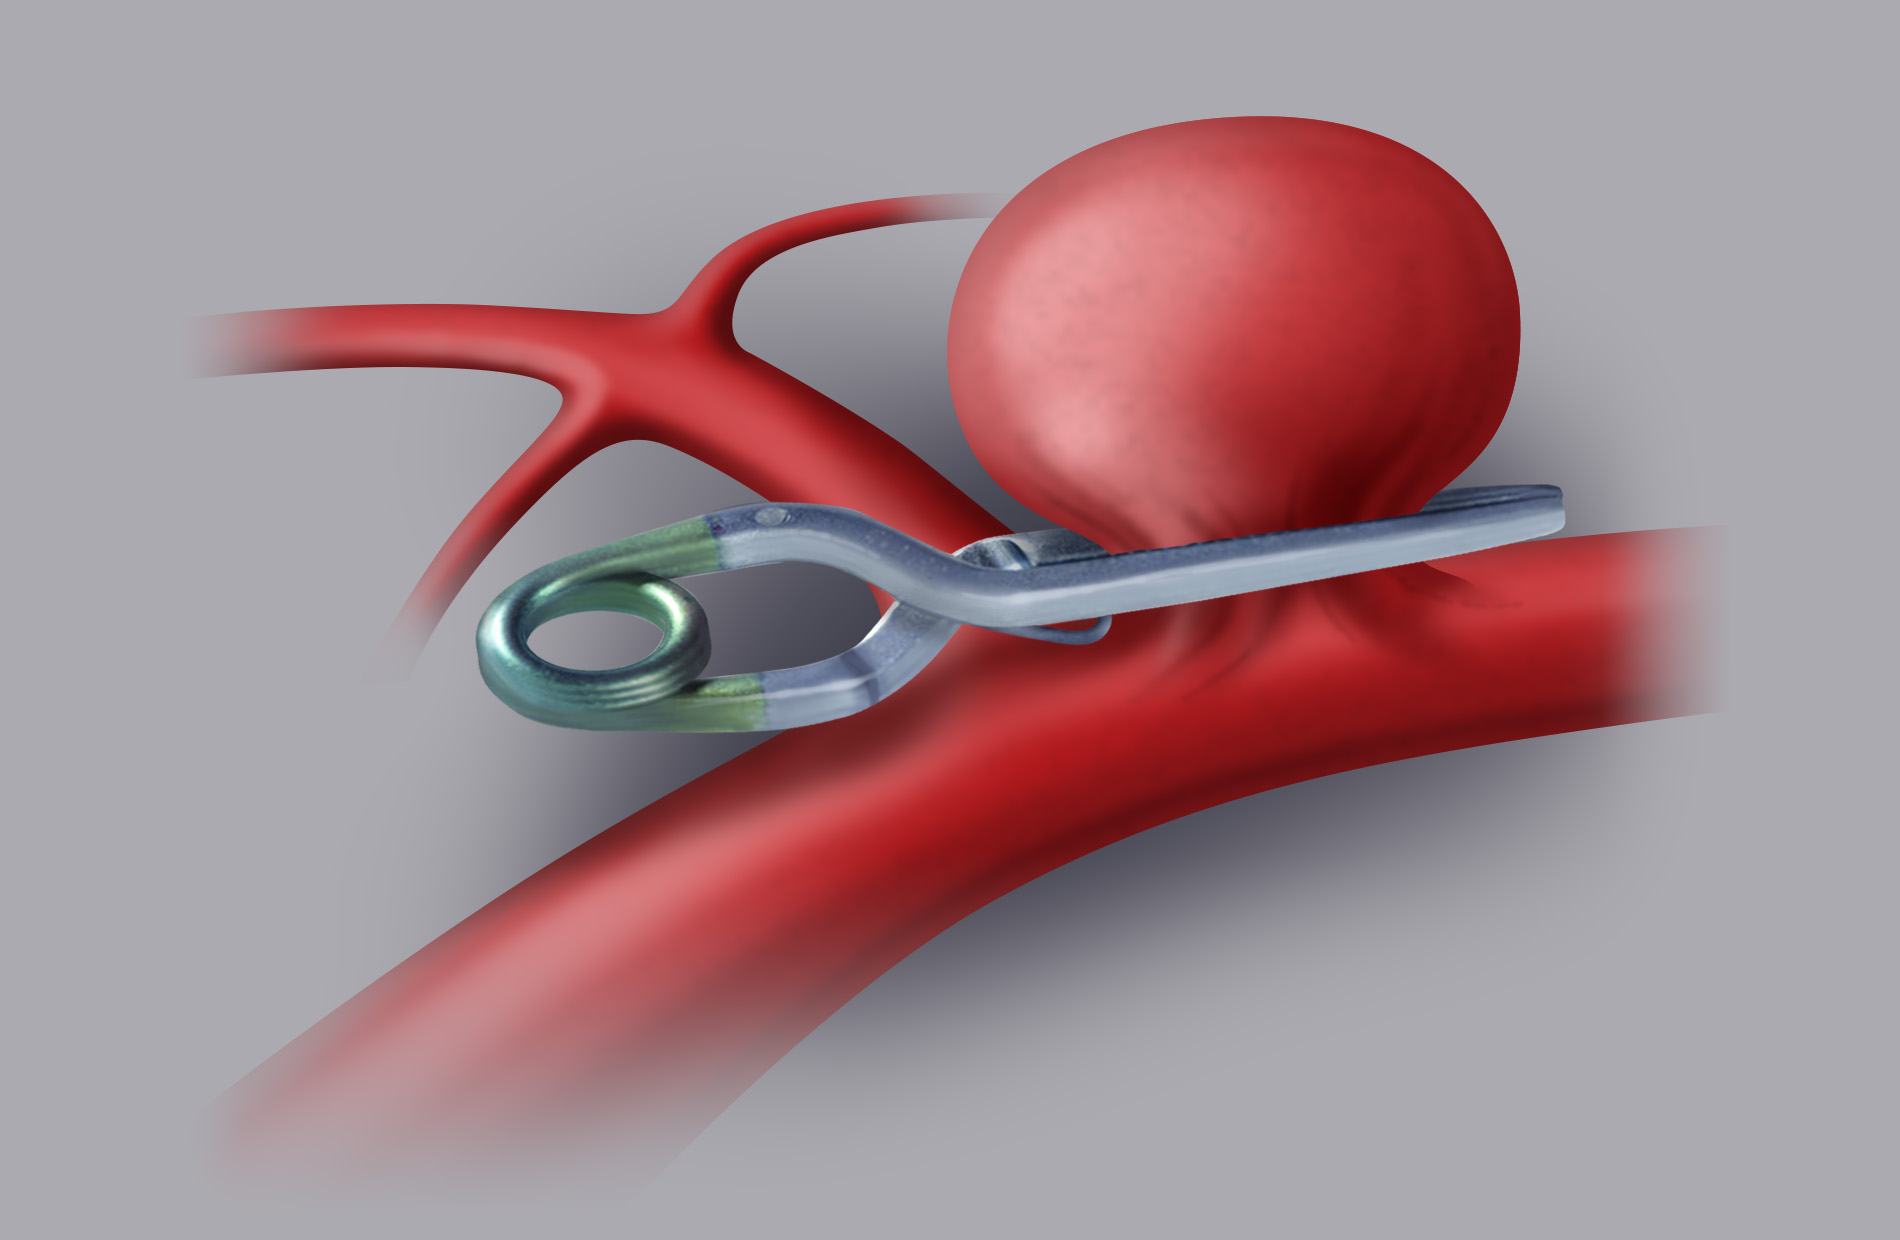 Trattamento chirurgico (clipping). L’aneurisma viene escluso dal circolo mediante apposizione di una o più clip, (piccole mollette di titanio) posizionate sul colletto dell’aneurisma stesso.